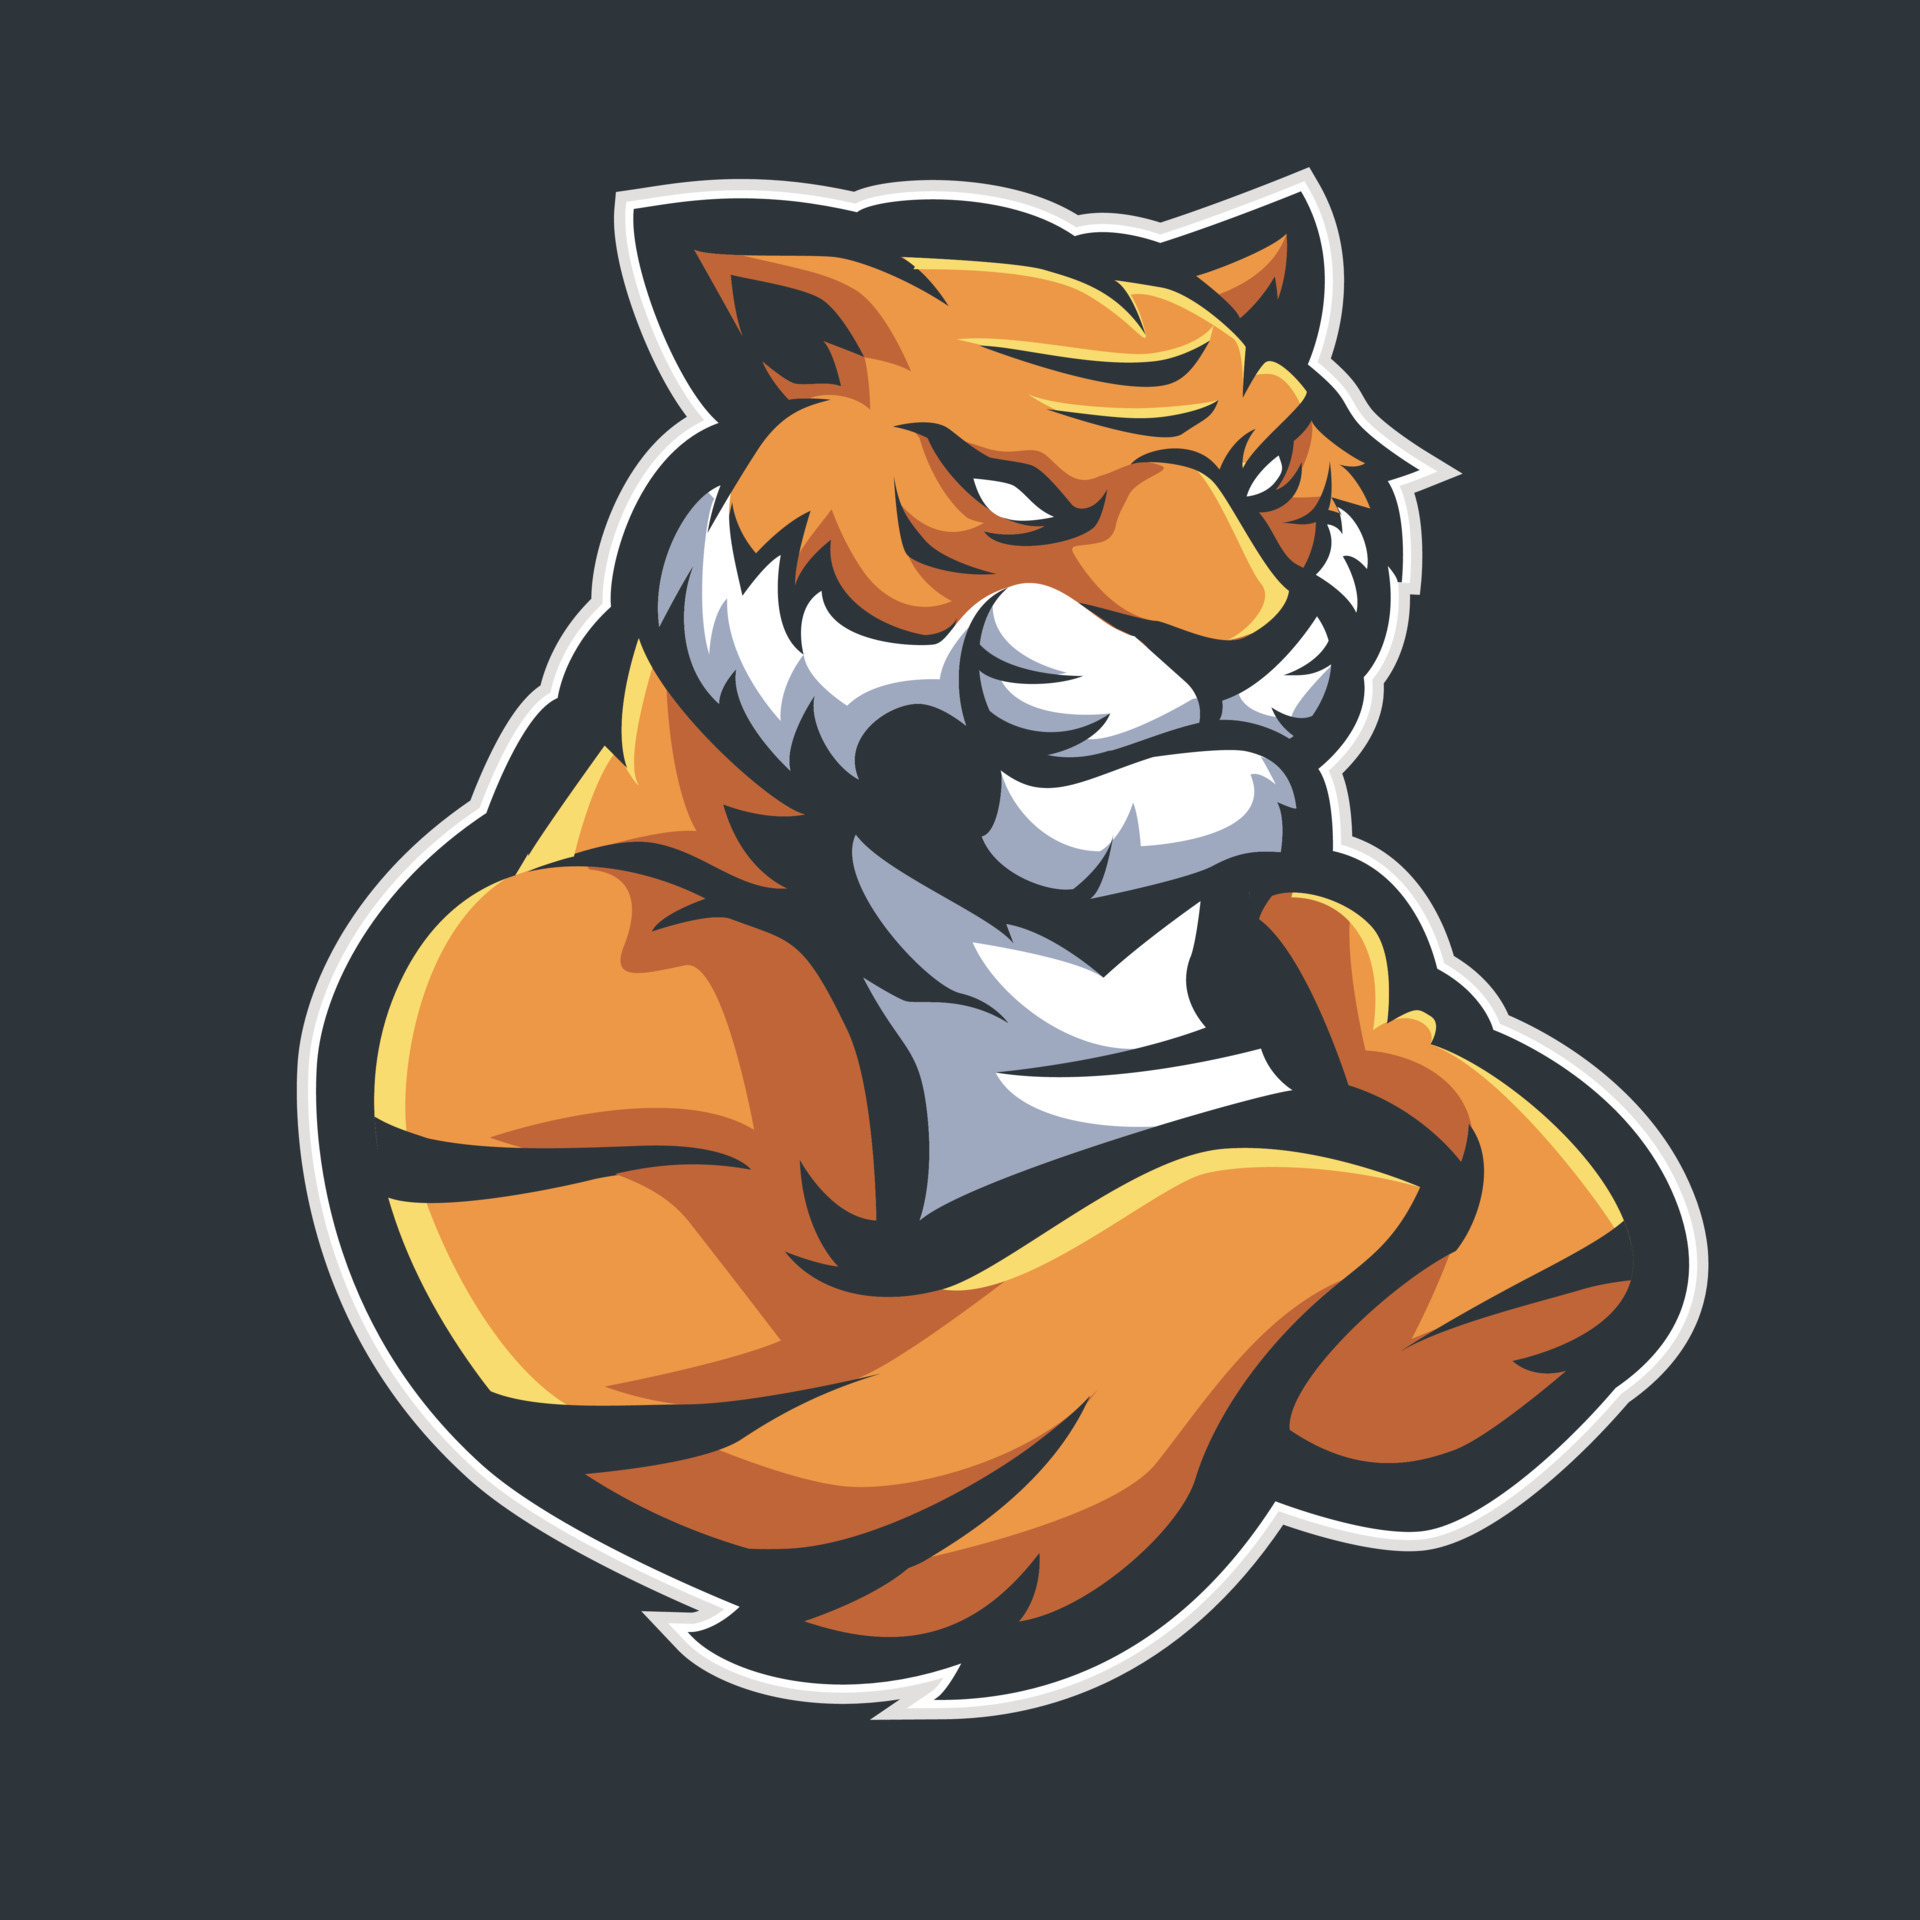 Tiger mascot sport logo design. Tiger animal mascot head vector  illustration logo 22579816 Vector Art at Vecteezy